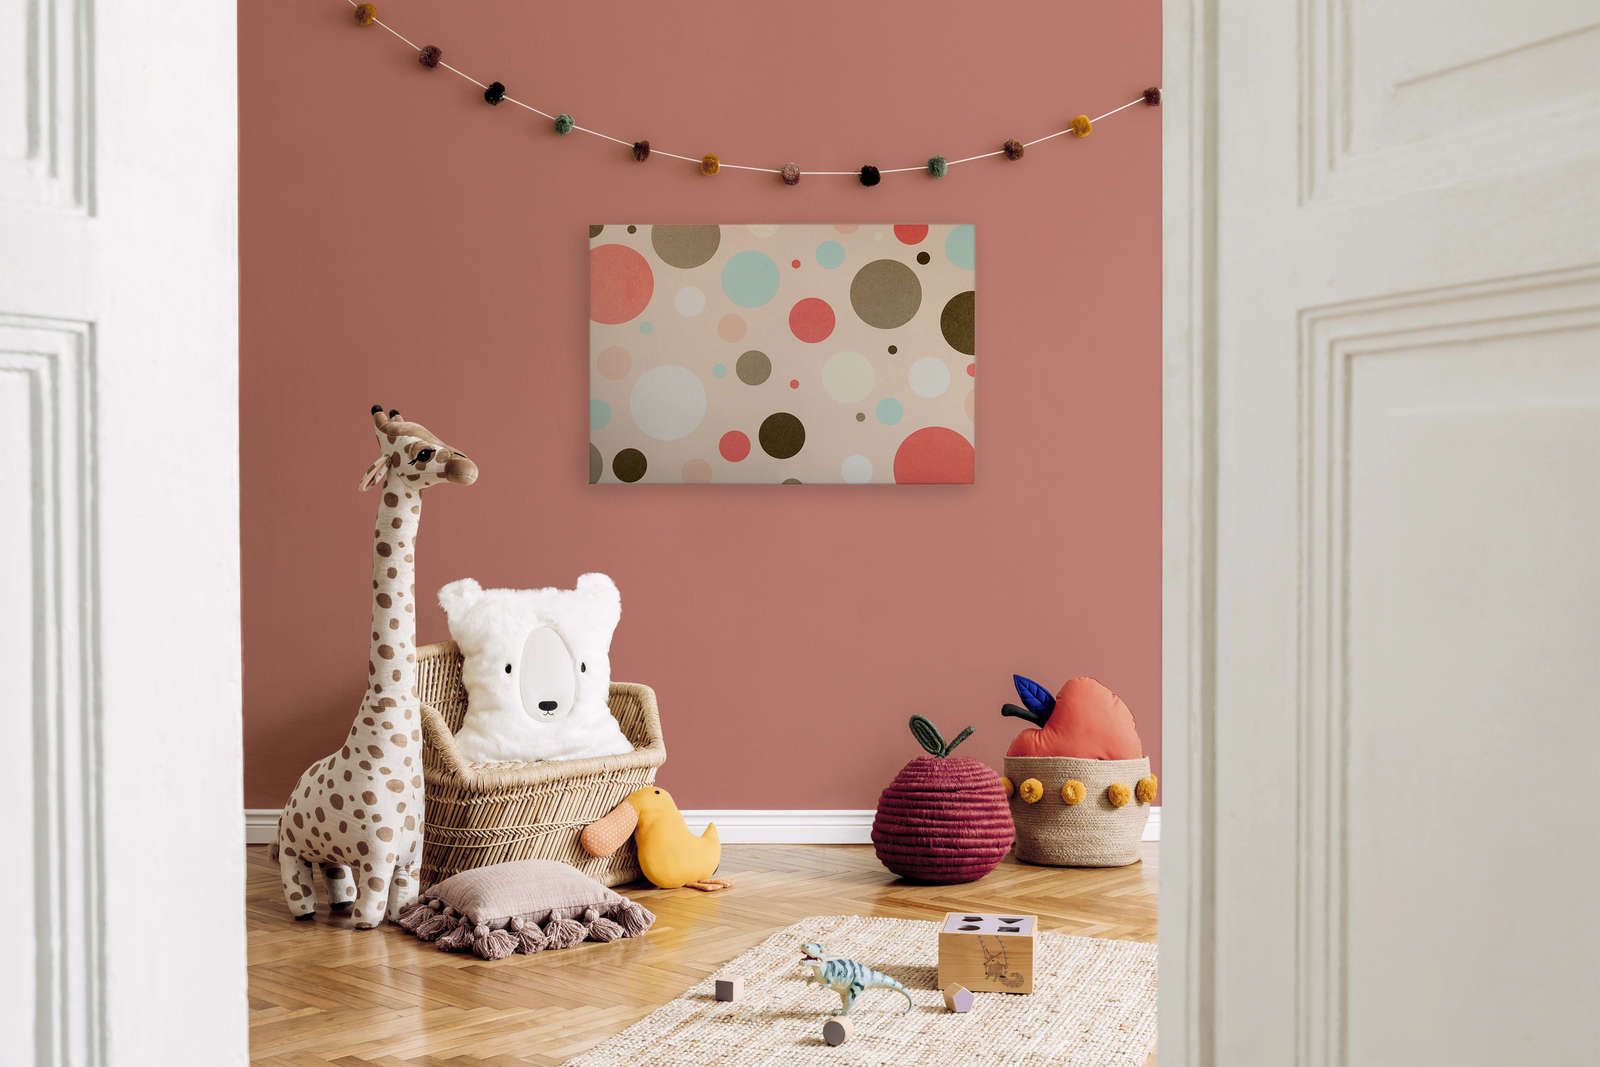             Lienzo para habitación infantil con círculos de colores - 90 cm x 60 cm
        